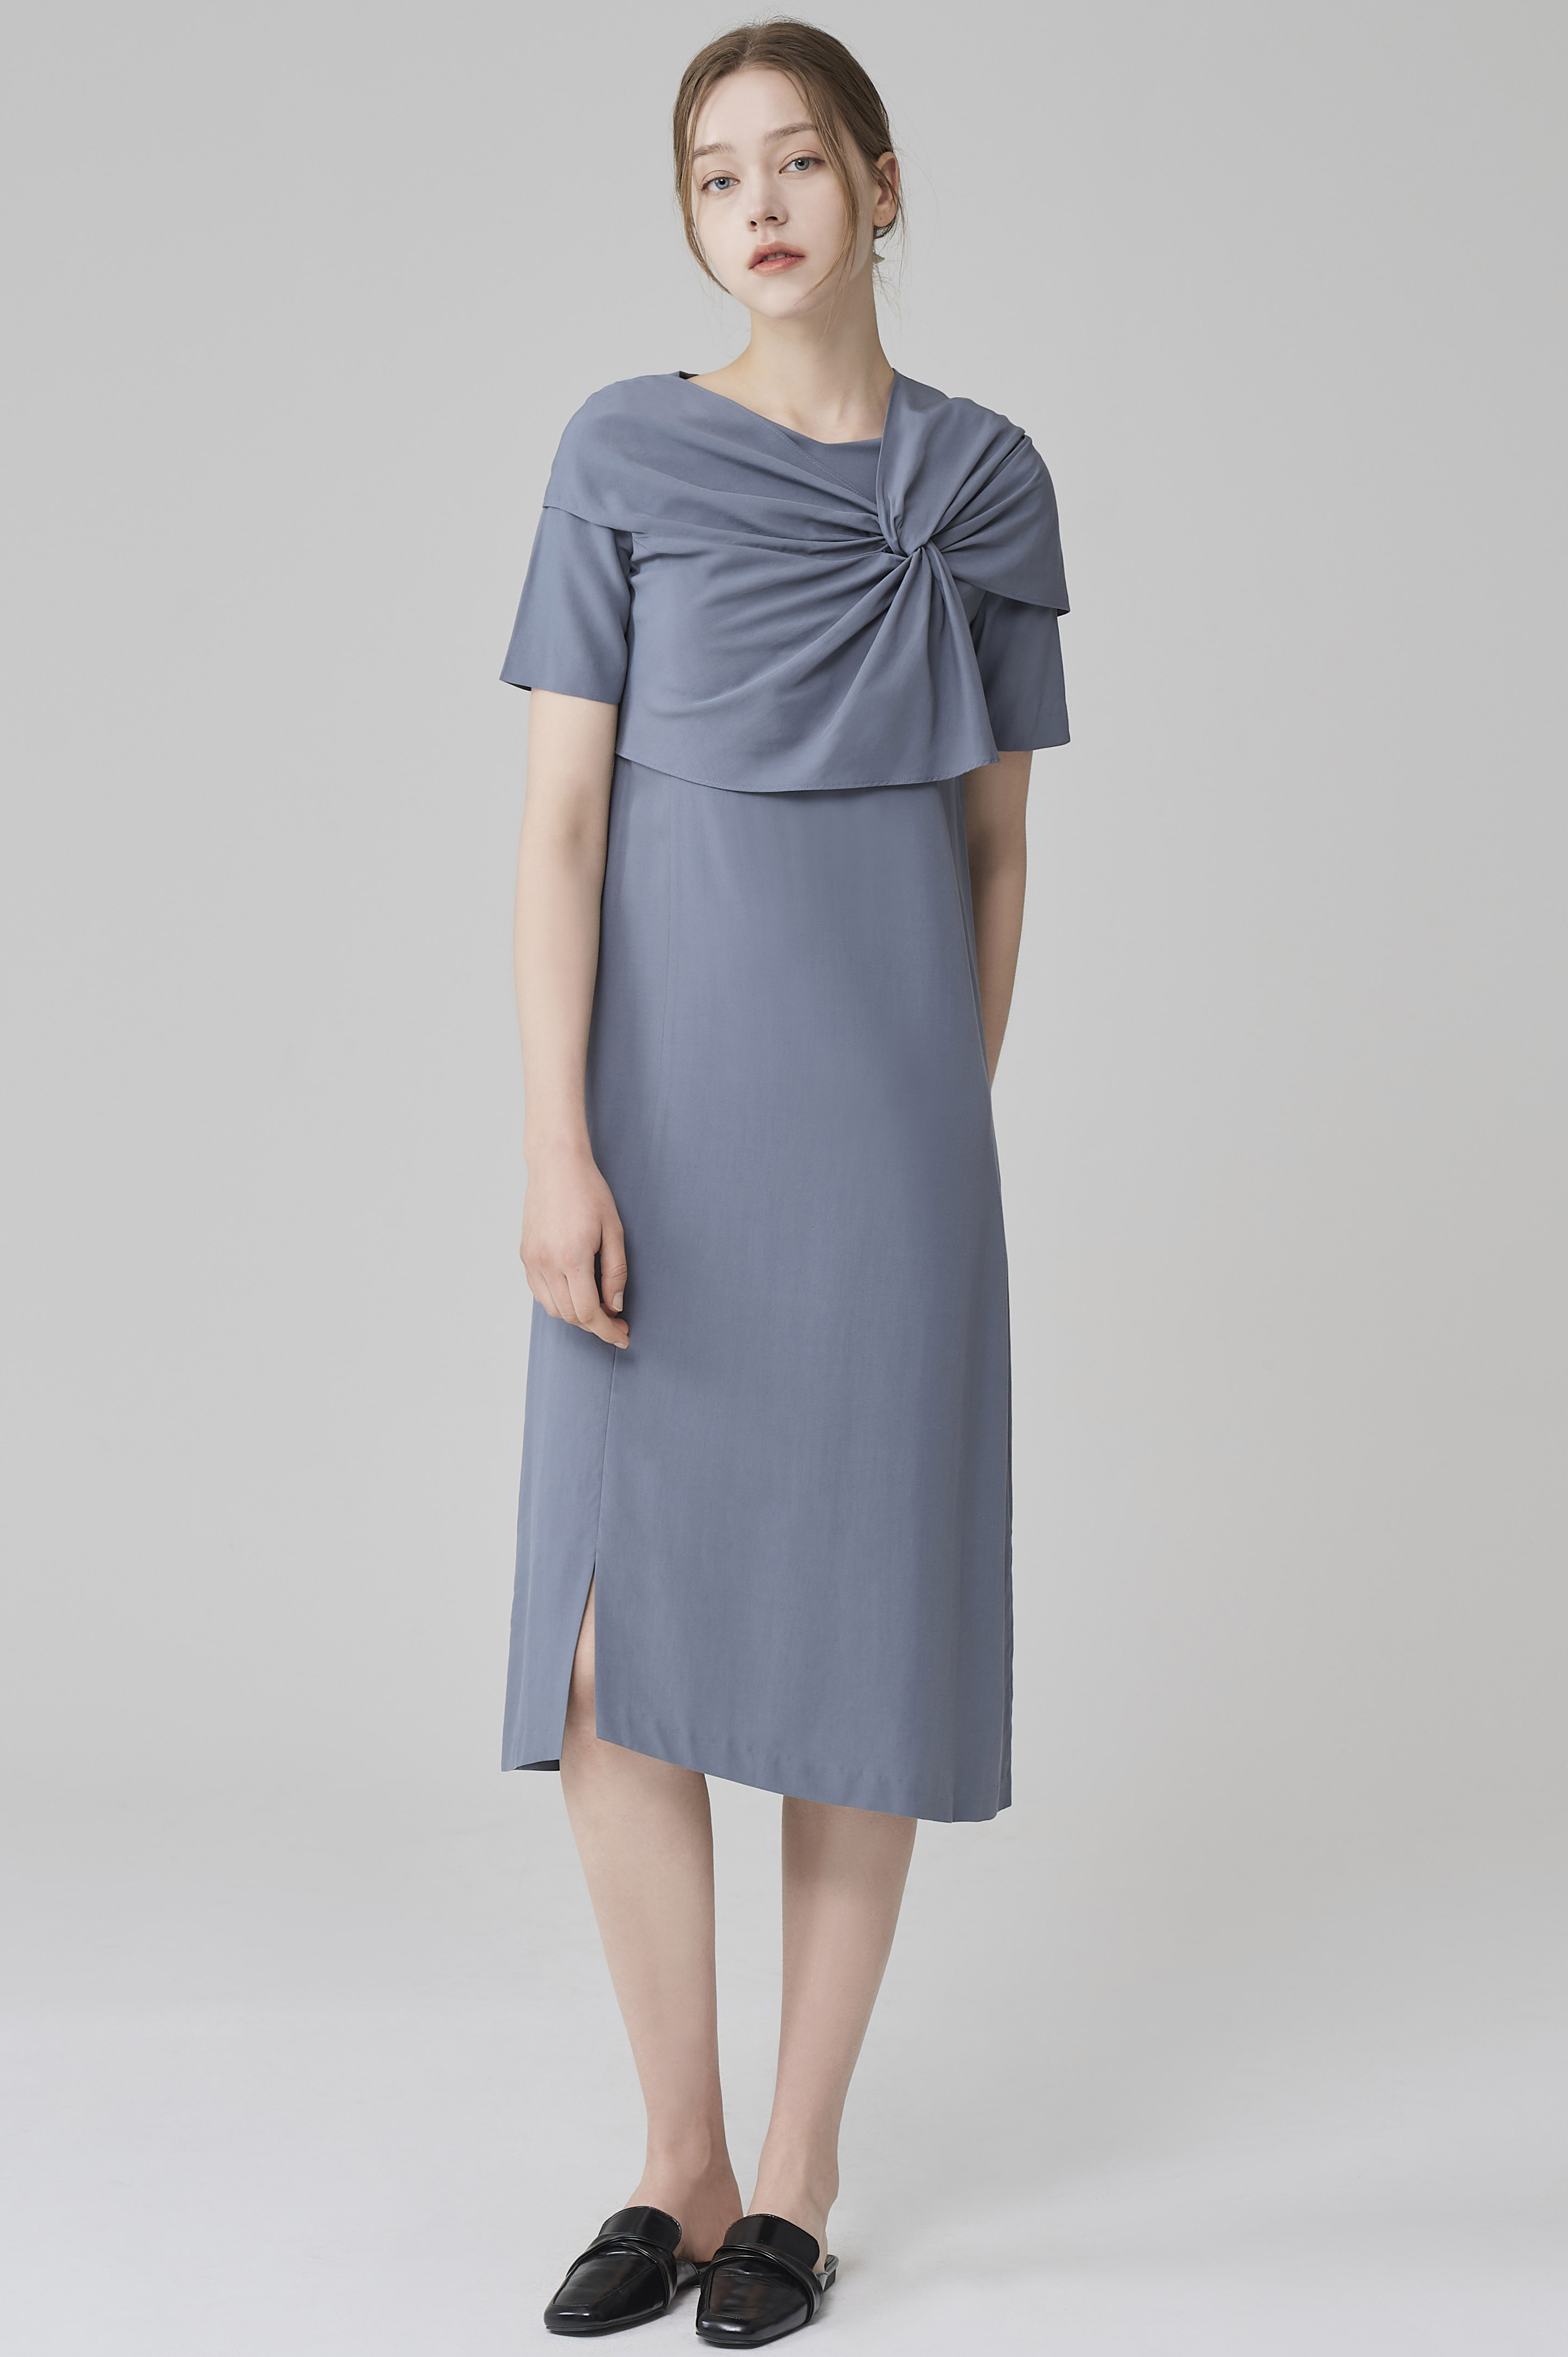 SILK INTERLACED DRESS-cerulean, 혜영킴, HYEYEONG KIM designer brand